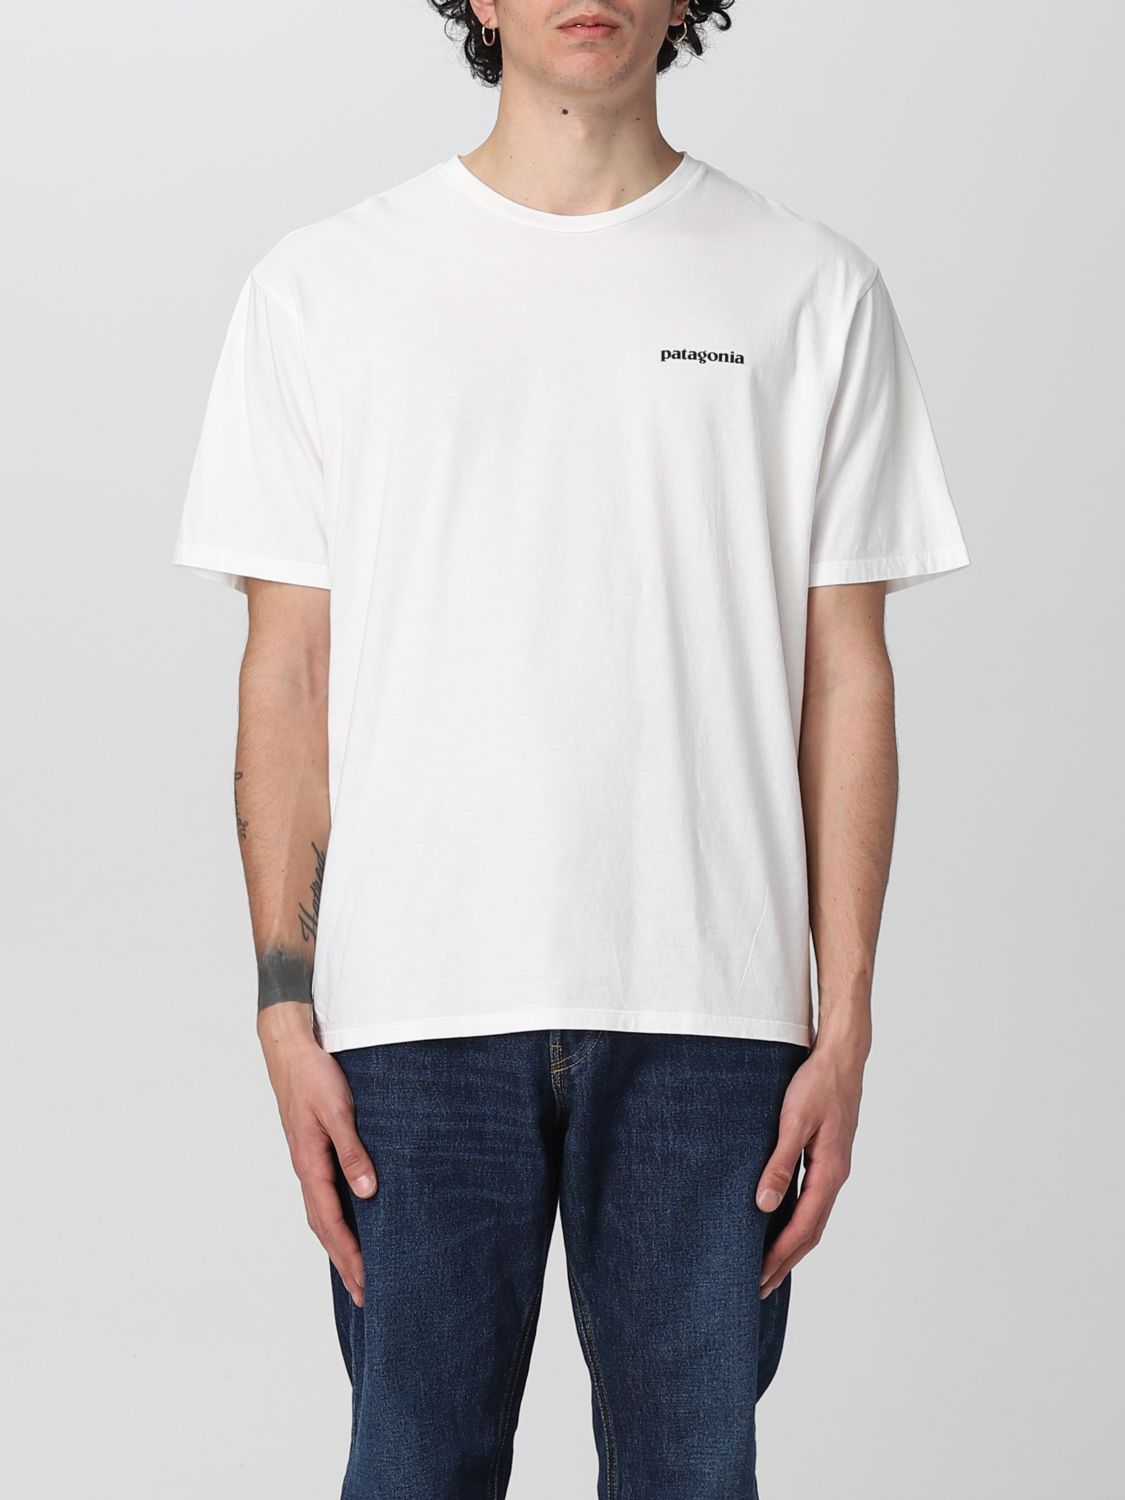 Patagonia Tシャツ メンズ ホワイト Giglio Comオンラインのpatagonia Tシャツ